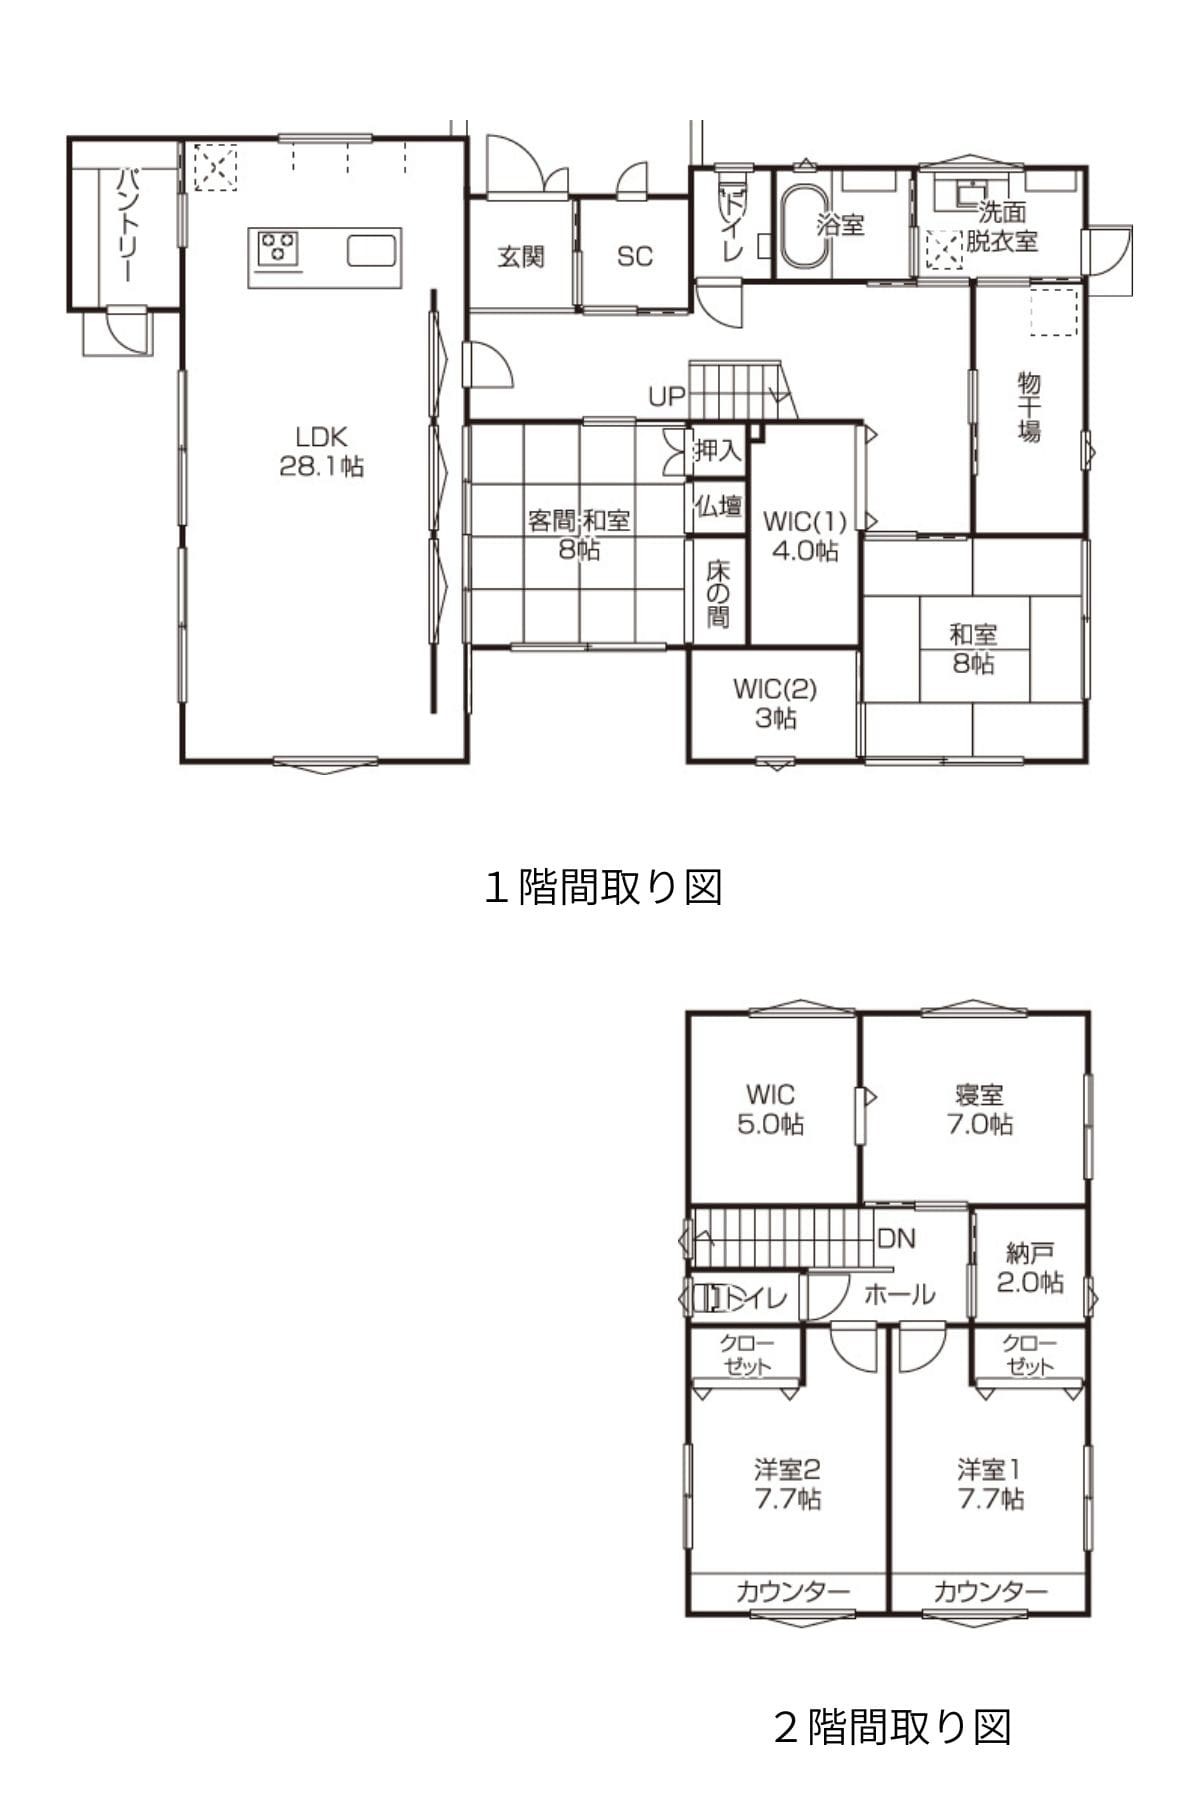 松江市のおすすめ工務店「松江土建」による新築事例の間取り図